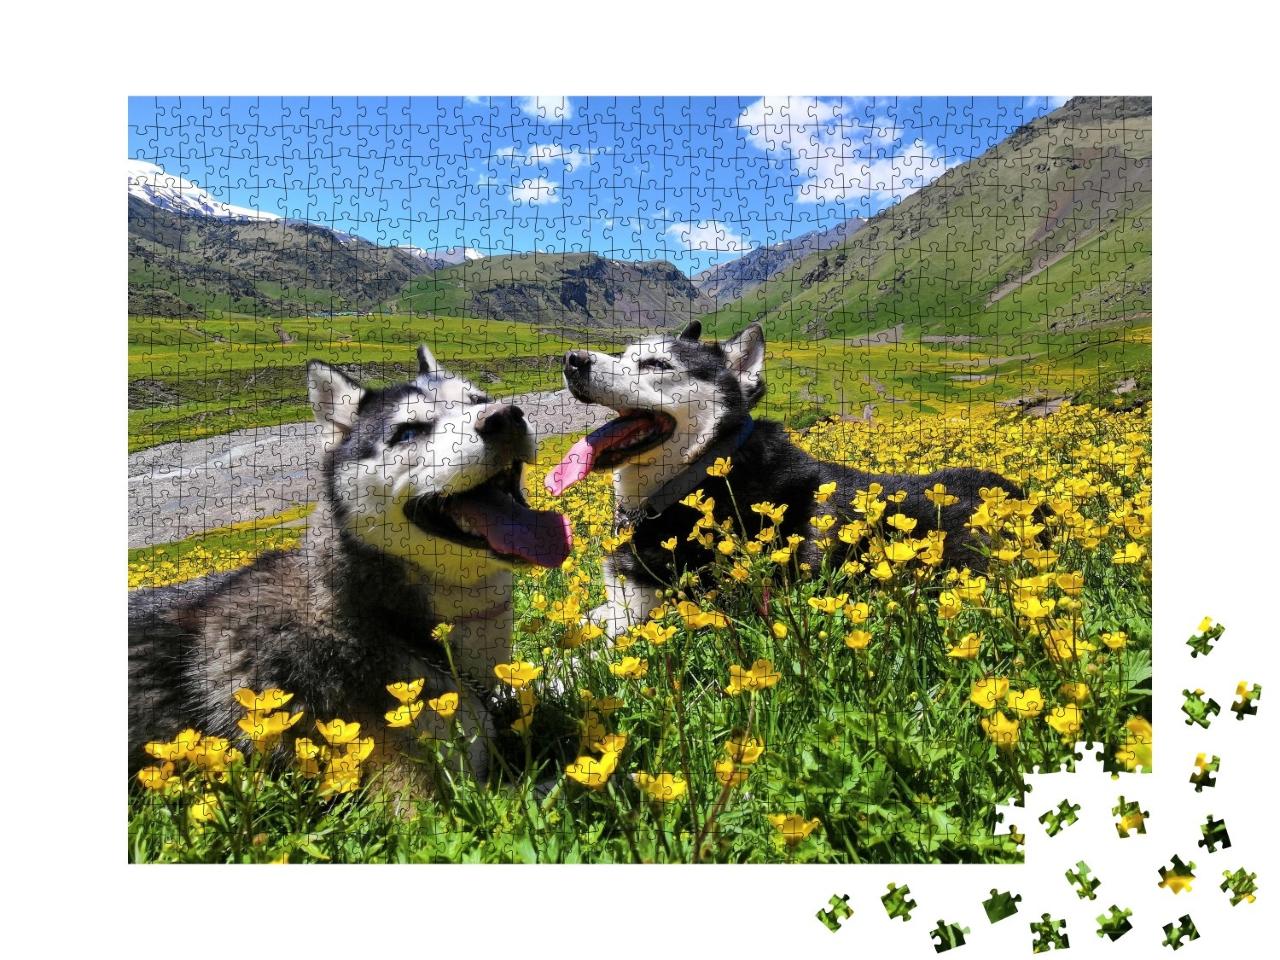 Puzzle de 1000 pièces « Deux huskies sibériens dans les montagnes du Caucase »